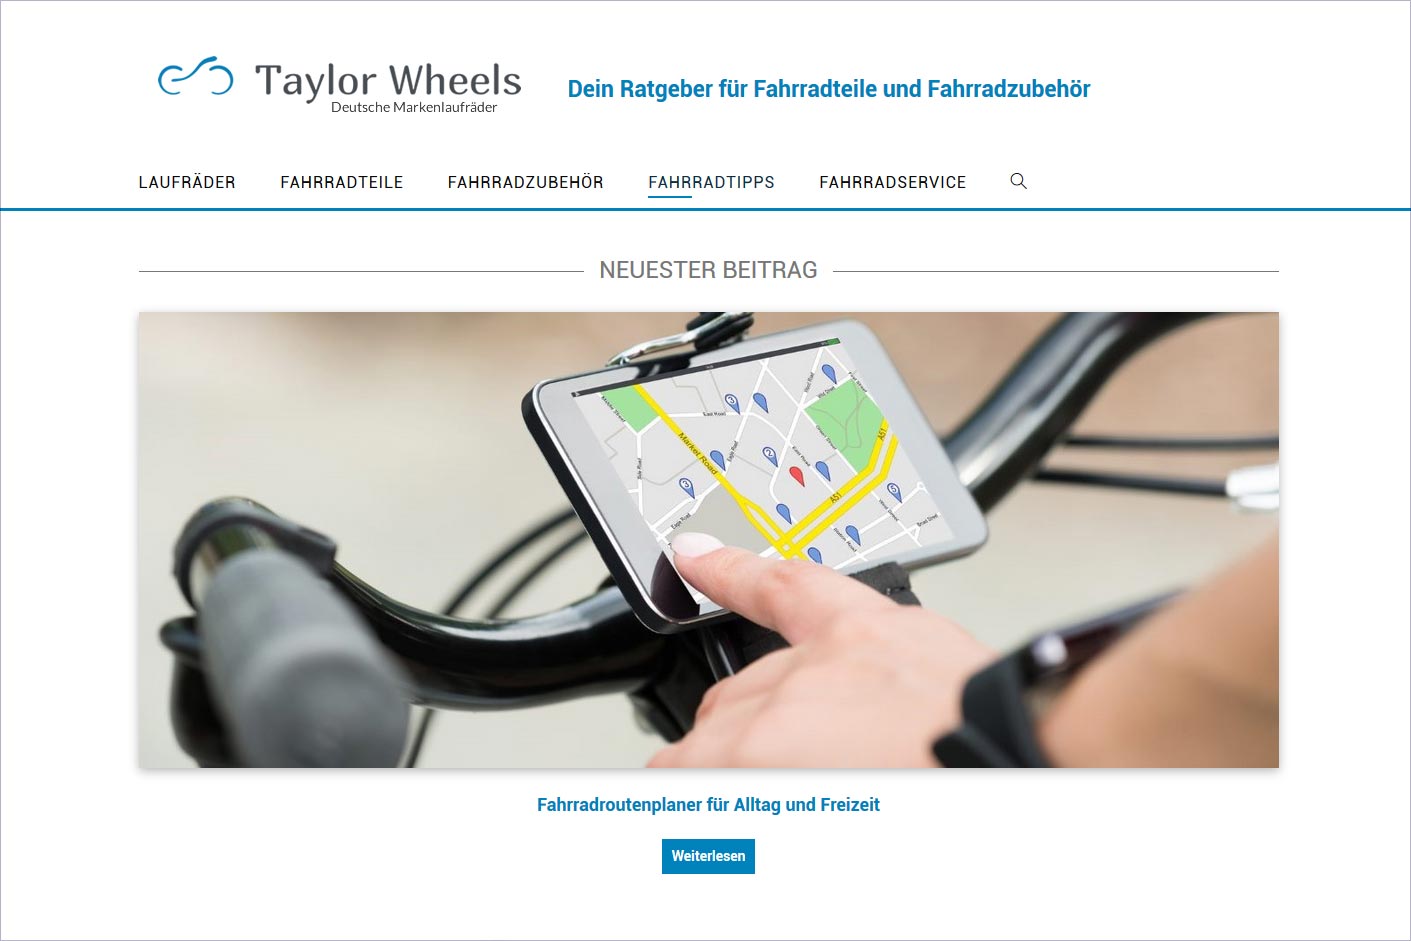 semcona - Case Study Taylor Wheels: Magazin